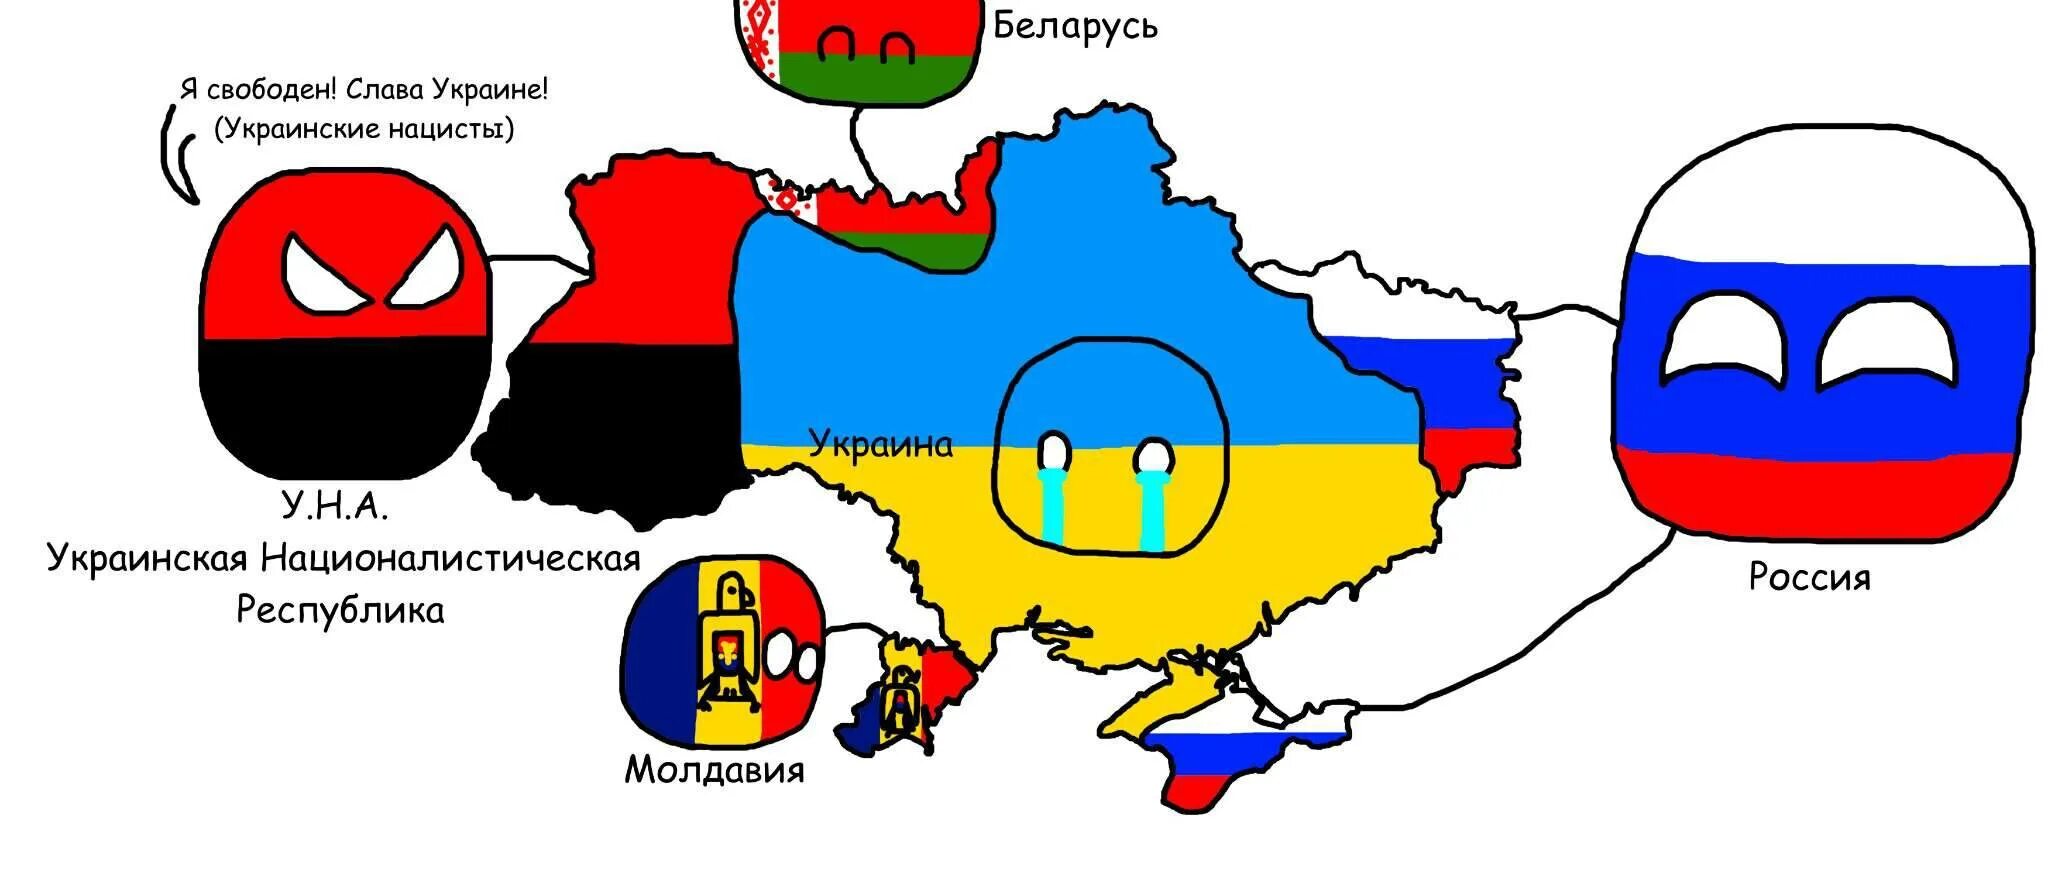 ОДКБ Countryballs. Флаг ОДКБ кантриболз. Карта раздела Украины после войны. Карта раздела Украины Польшей. Распад белоруссии